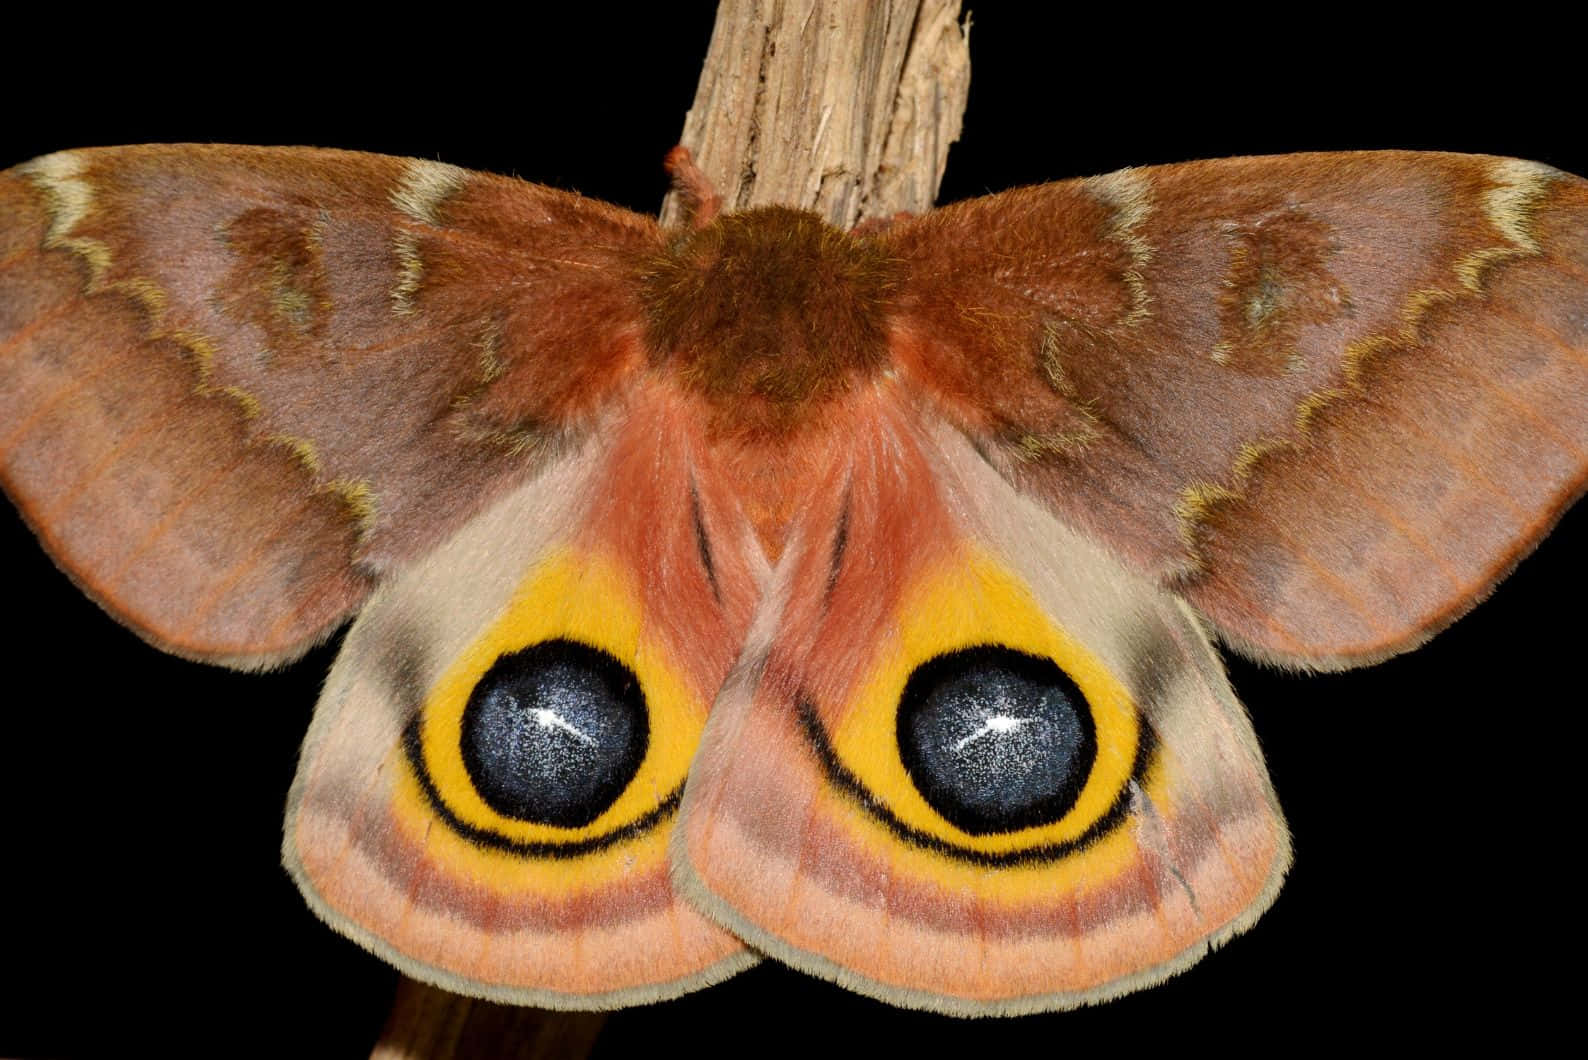 Io Moth Vivid Eyespots Wallpaper